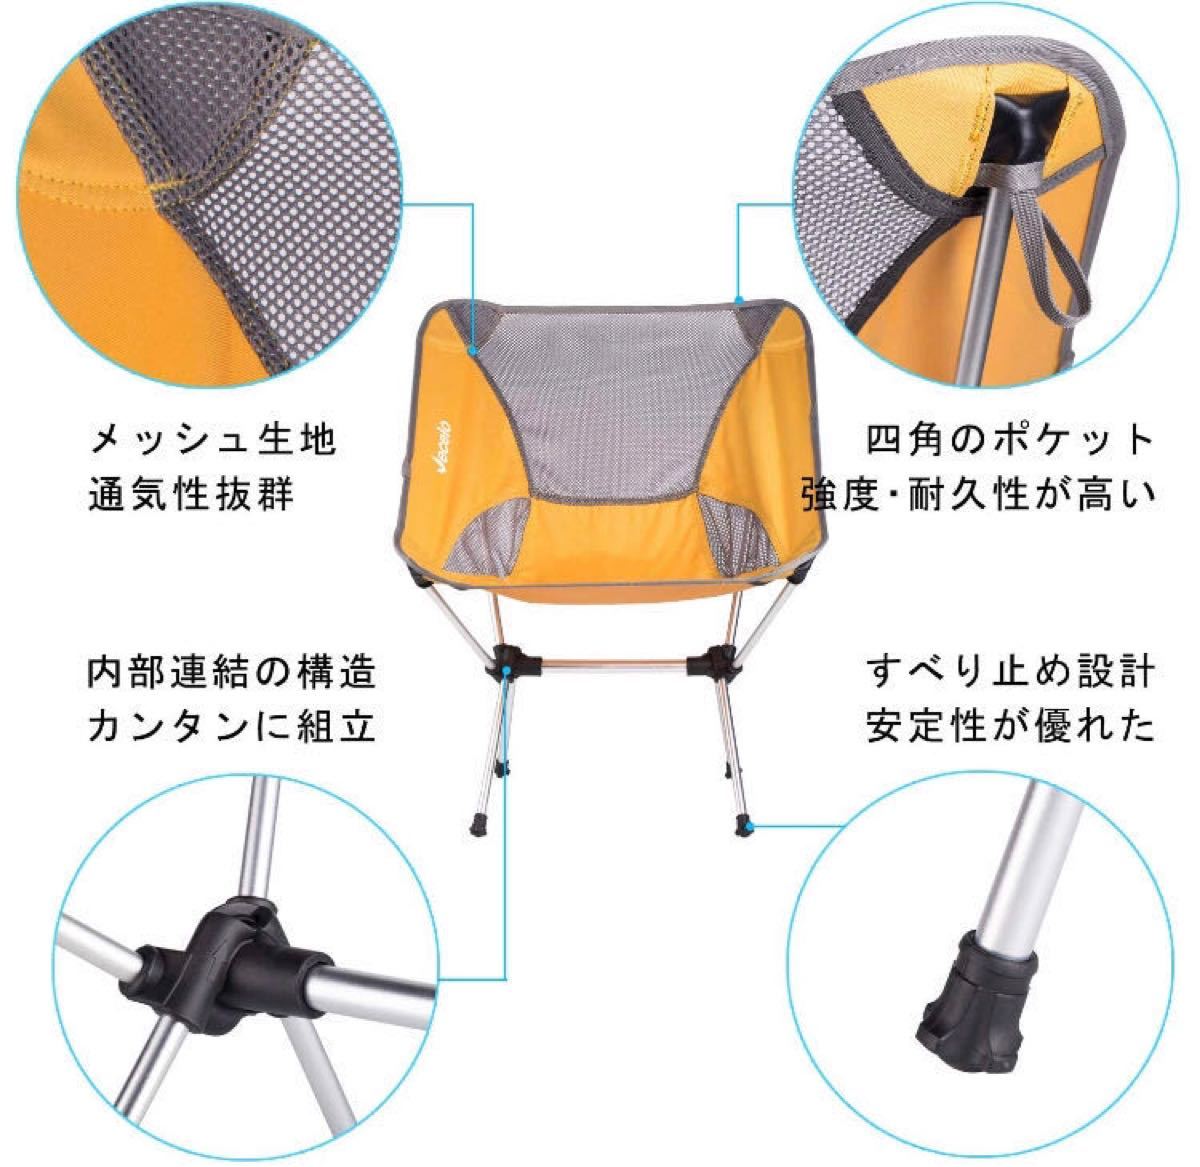 アウトドアチェア 折りたたみ 超軽量 組み立て式チェア キャンプ椅子